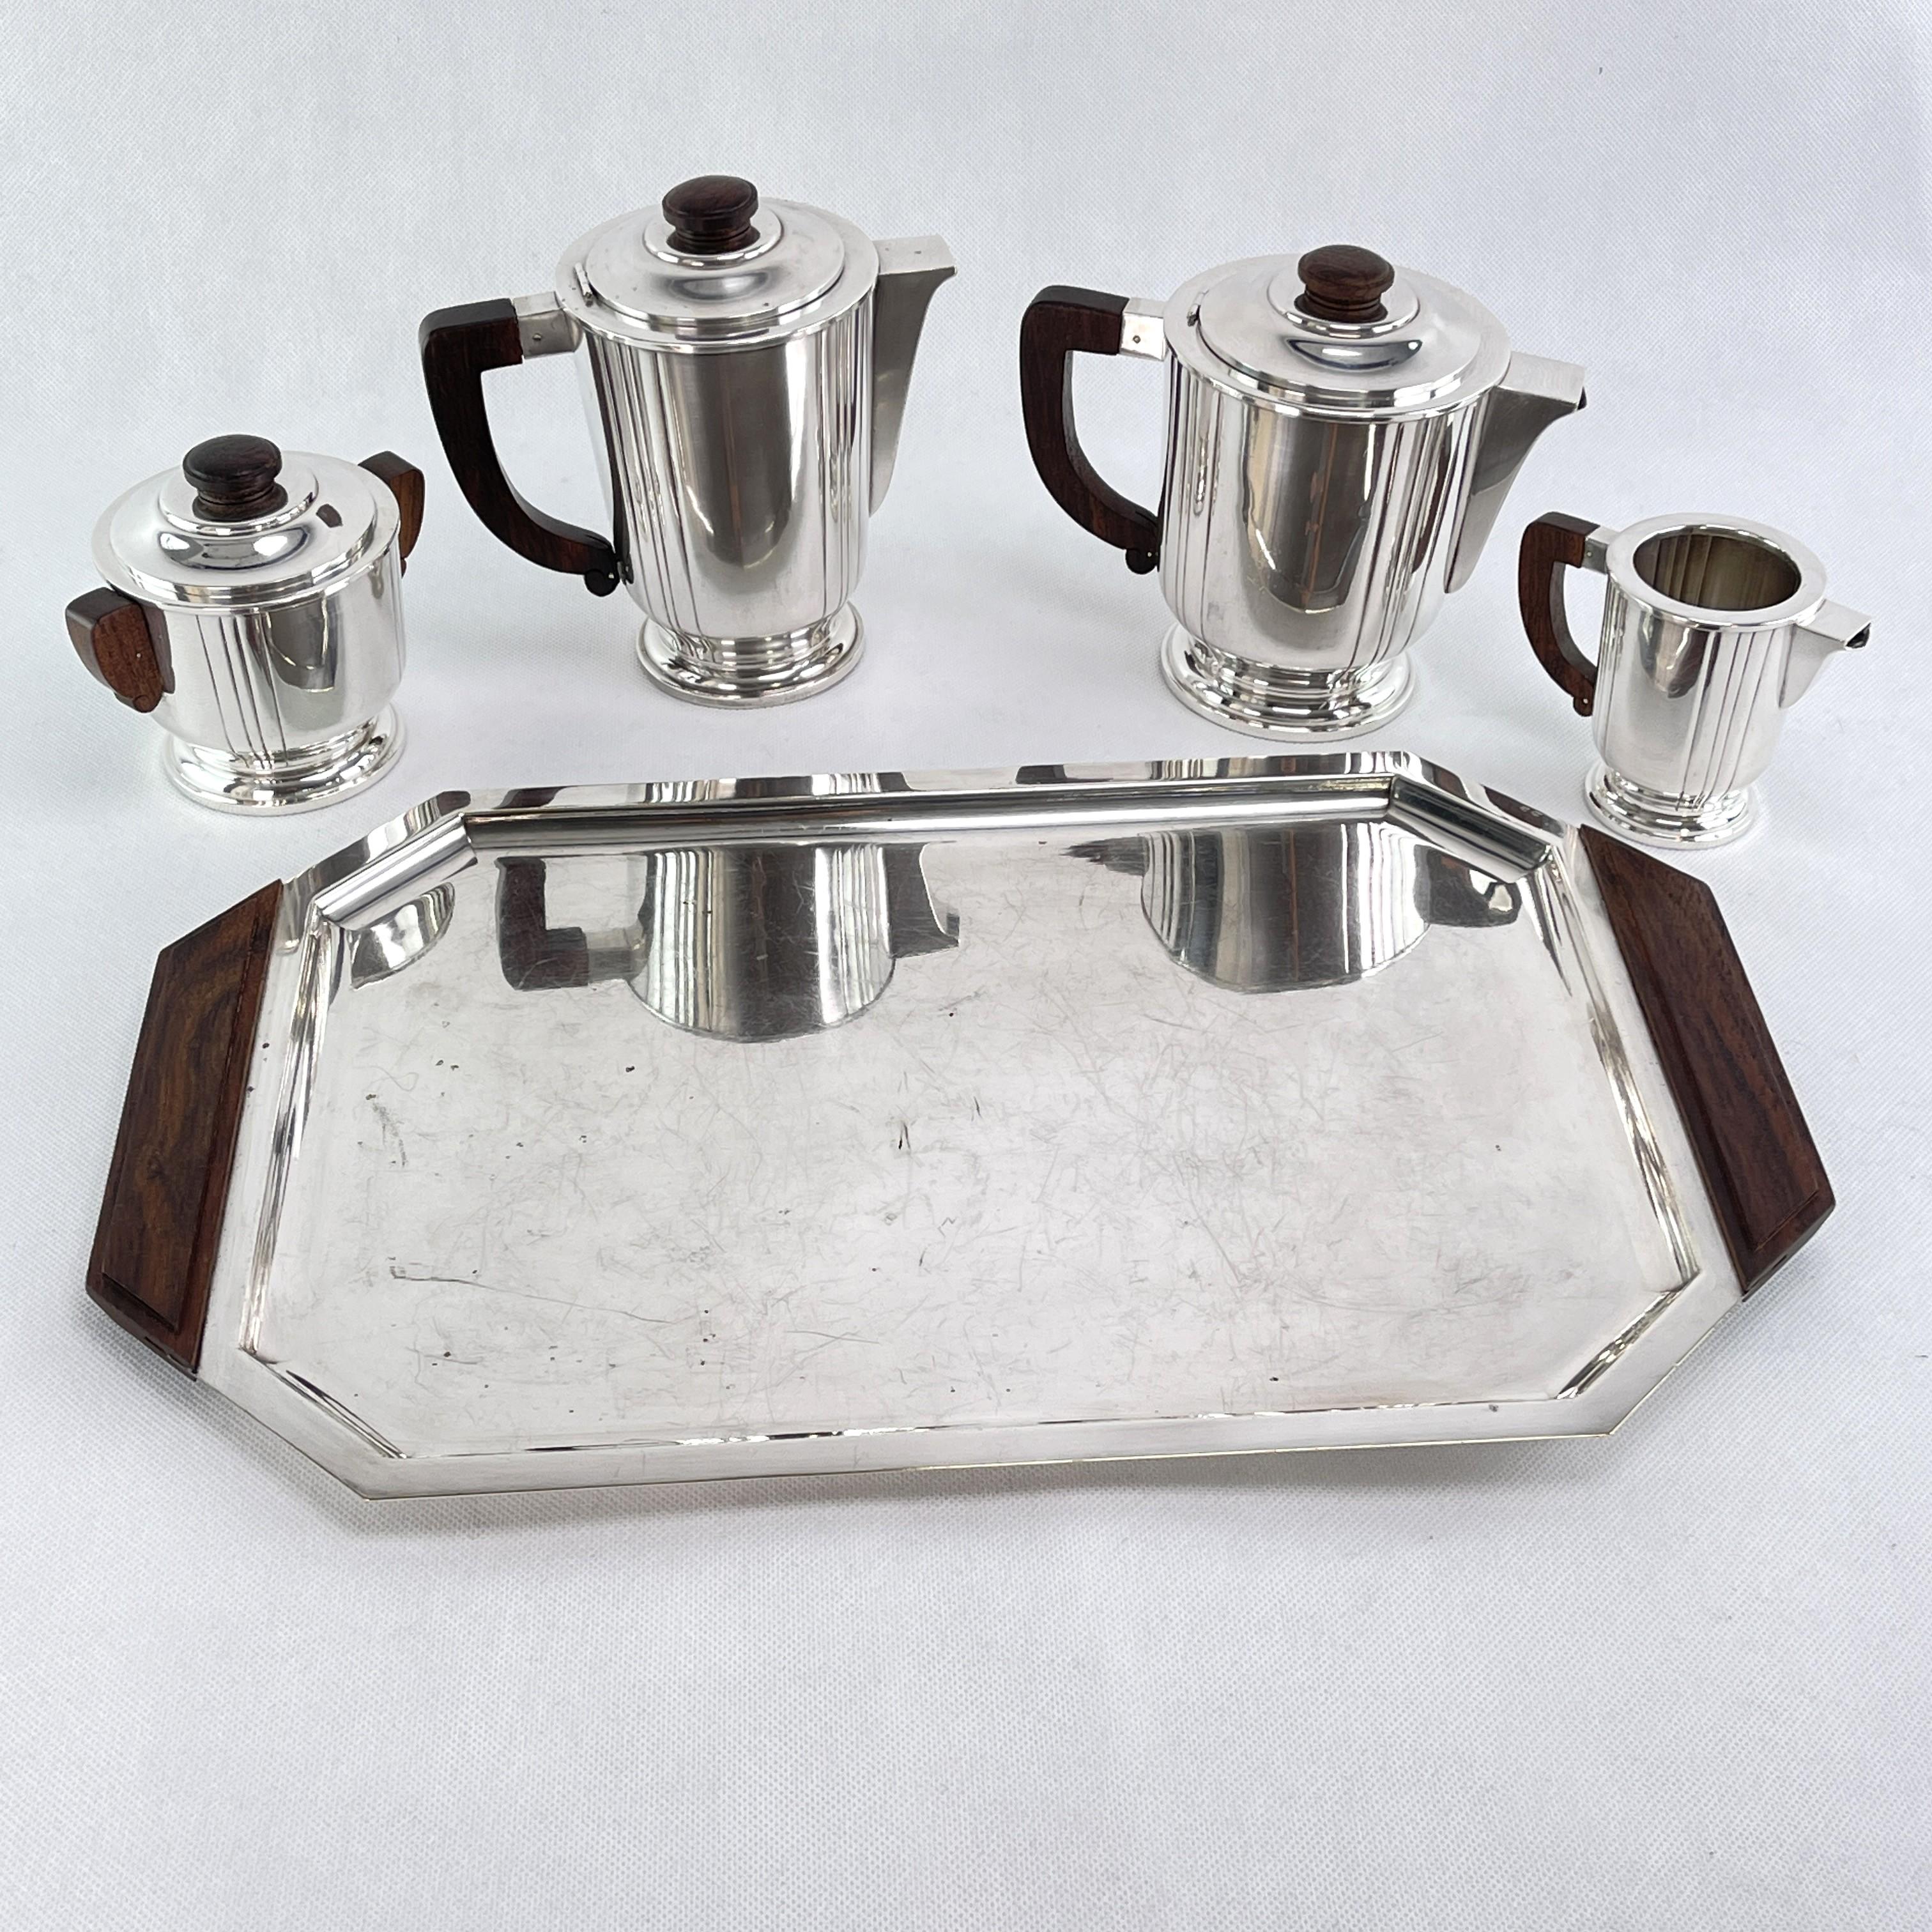 Kaffee-/Teeservice - 1920er Jahre

Dieses Kaffeeservice aus den 1920er Jahren ist im typischen Stil der Stromlinienmoderne gehalten. Es umfasst eine Kaffeekanne, eine Teekanne, eine Zuckerdose, ein Milchkännchen und ein Tablett mit Griff.

Die